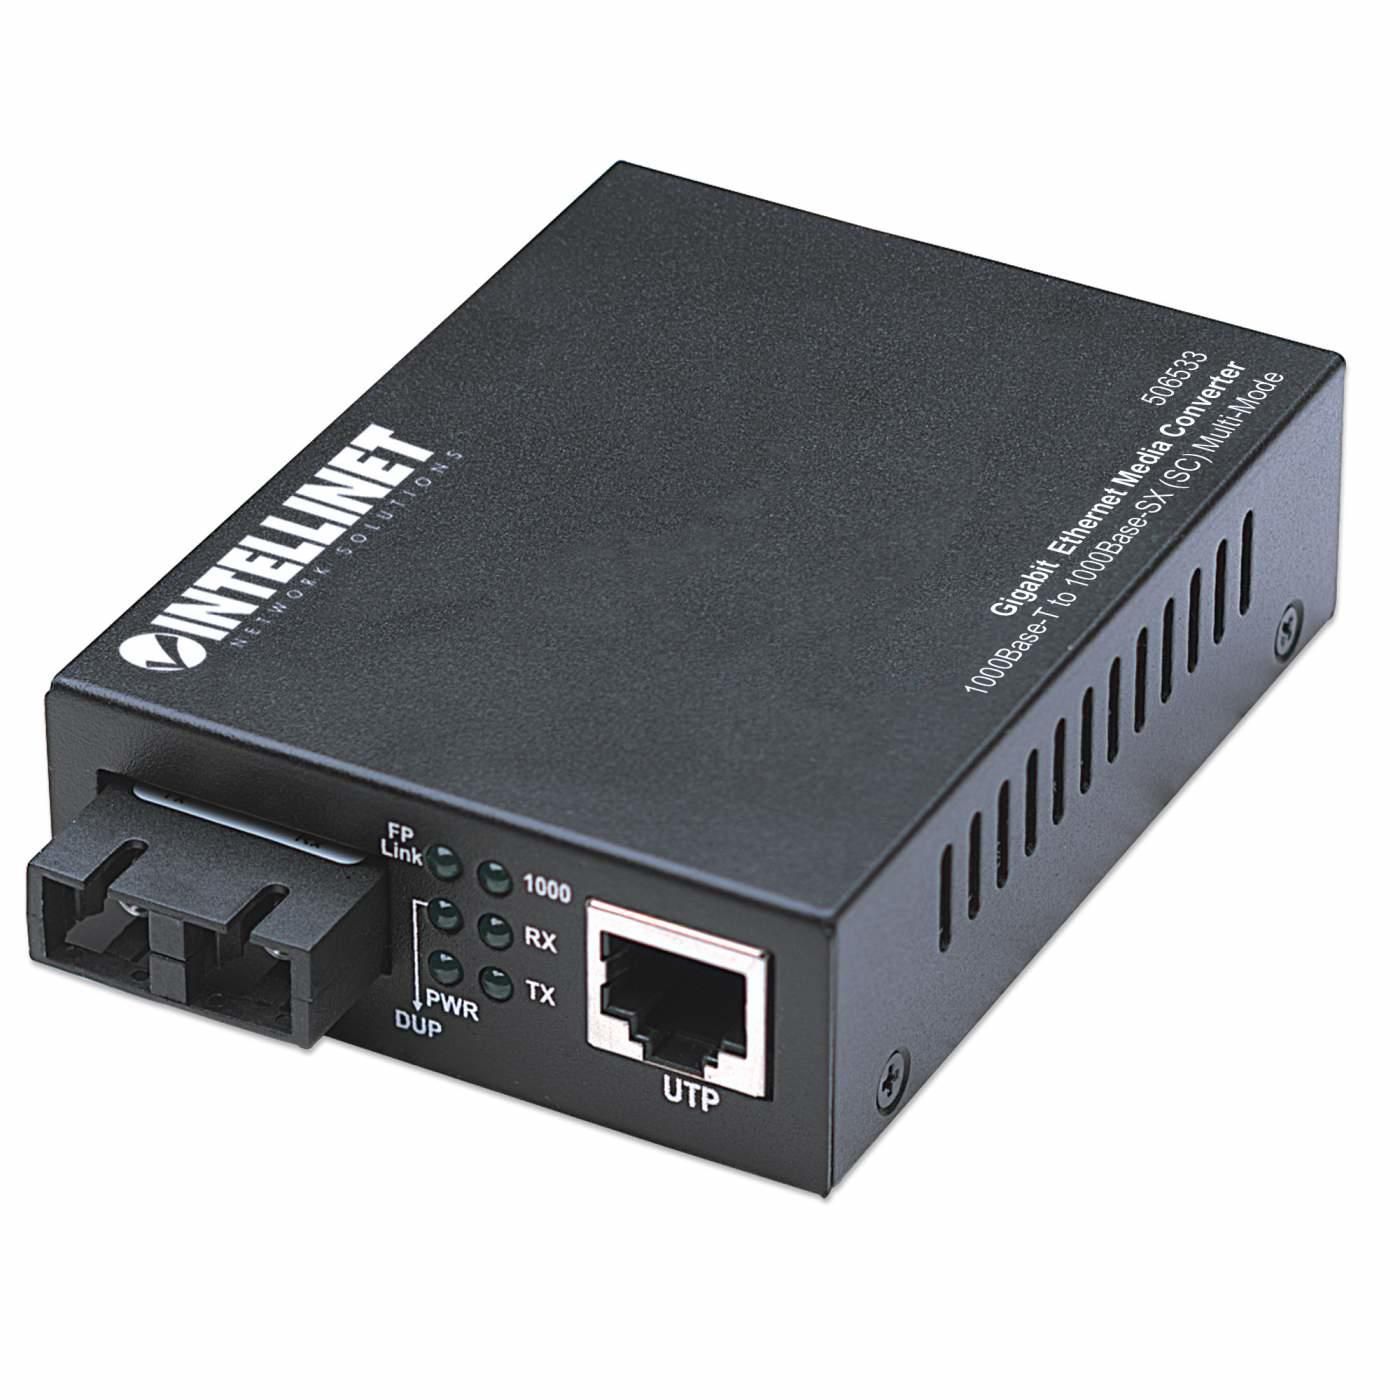 Intellinet 506533 Gigabit Ethernet Media Convert 